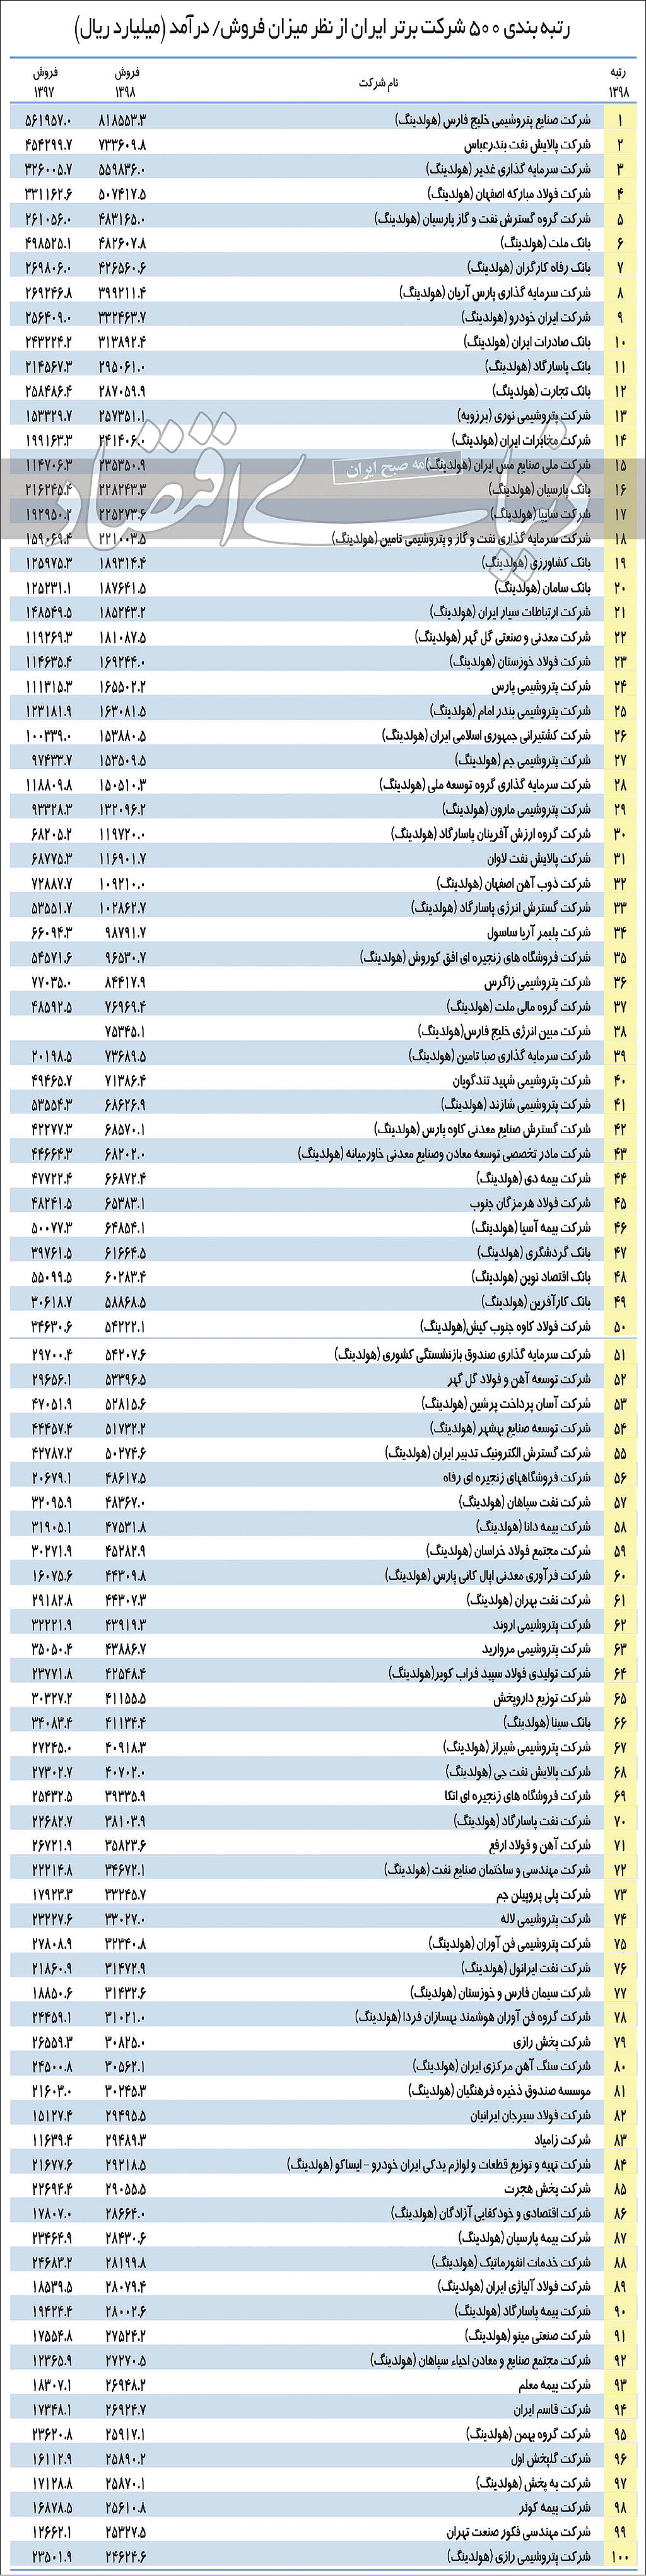 لیست 500 شرکت برتر ایرانی-1